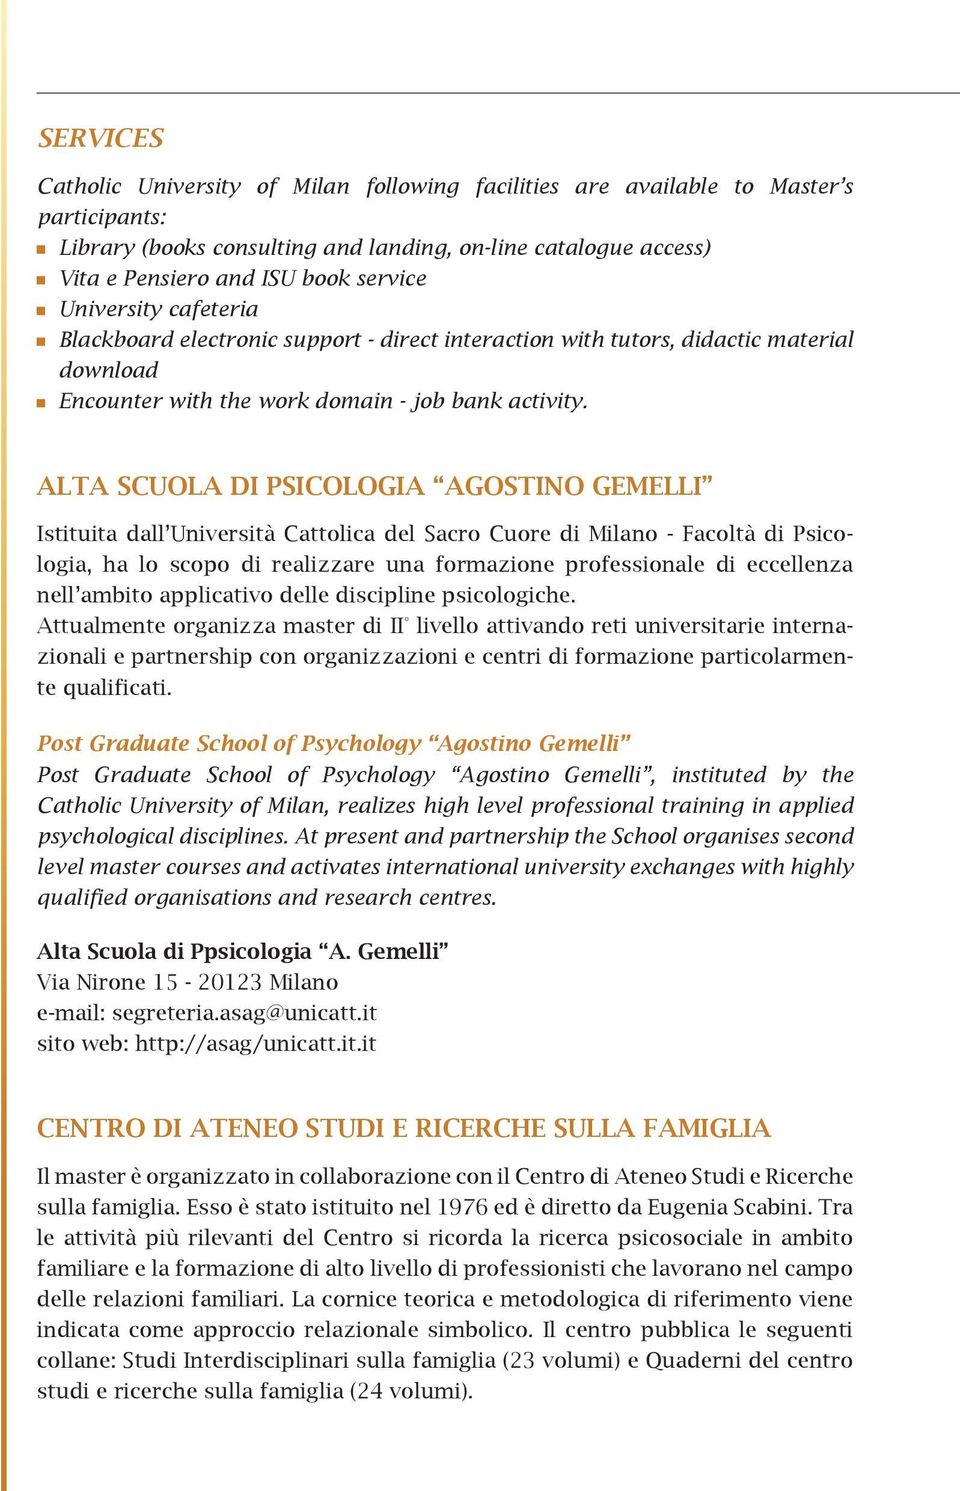 ALTA SCUOLA DI PSICOLOGIA AGOSTINO GEMELLI Istituita dall Università Cattolica del Sacro Cuore di Milano - Facoltà di Psicologia, ha lo scopo di realizzare una formazione professionale di eccellenza